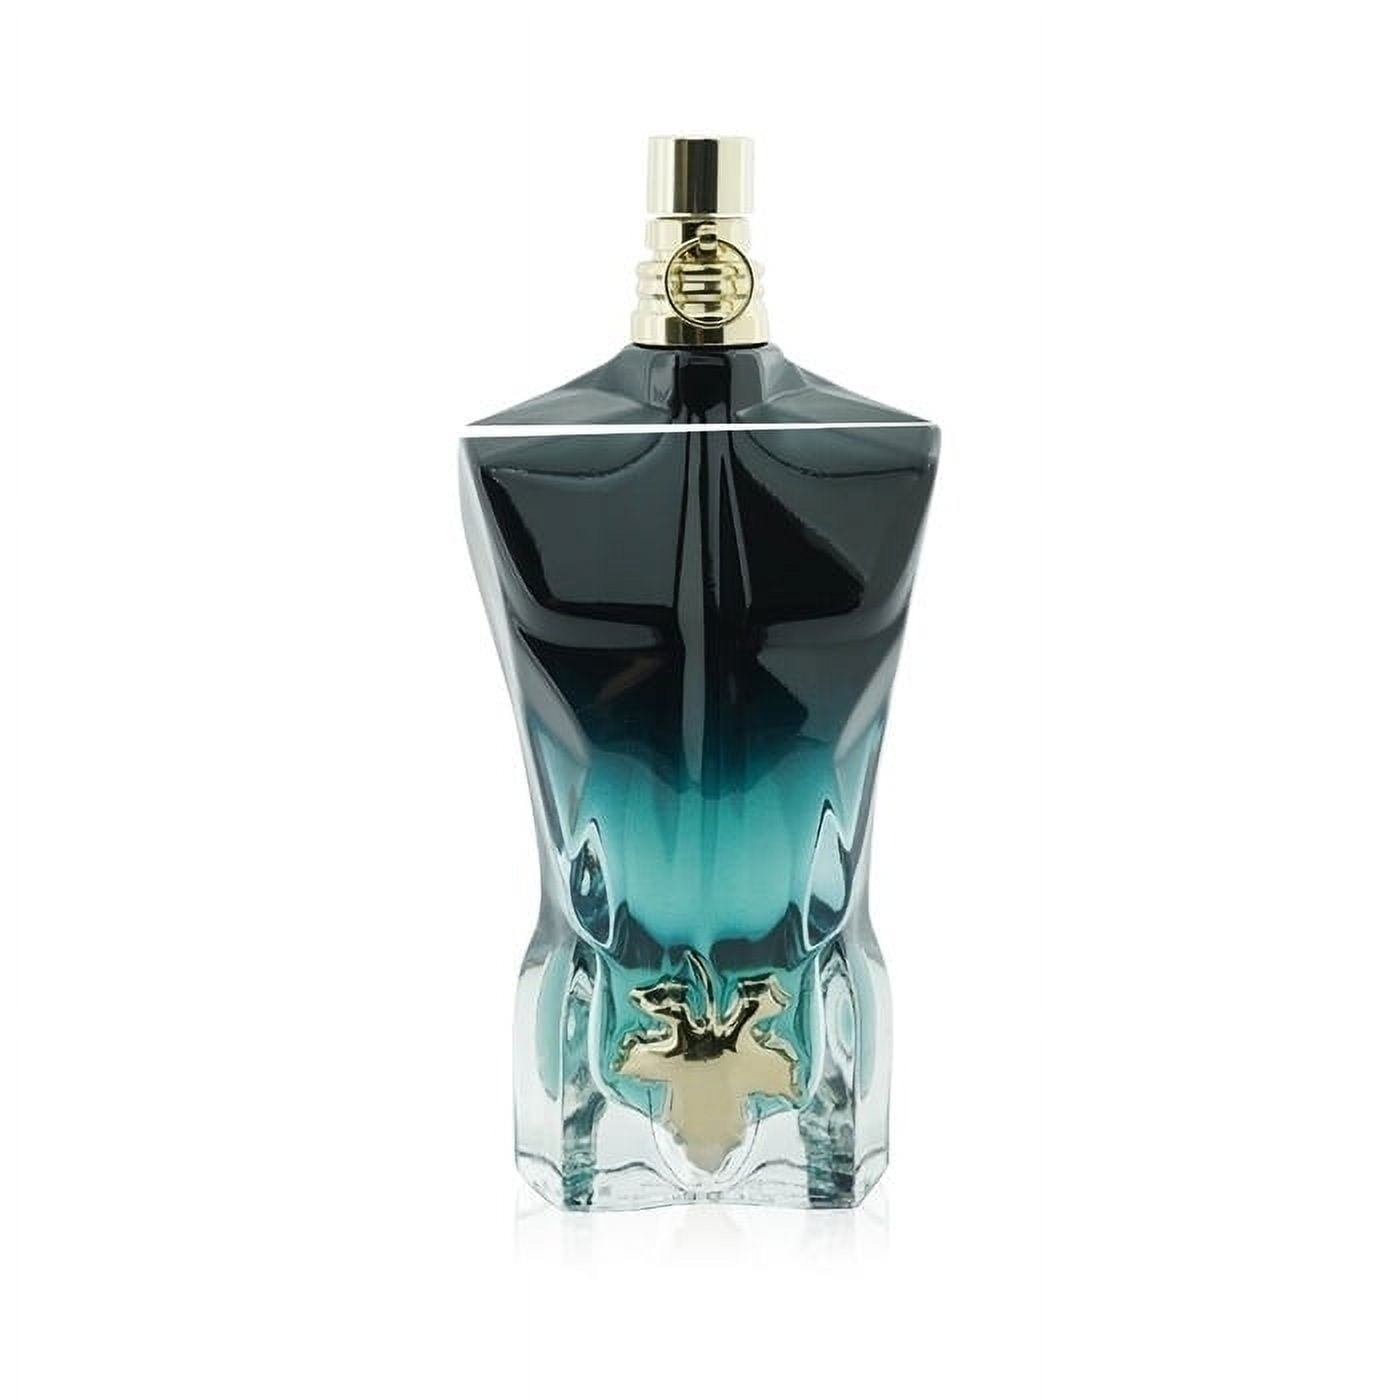 Le Beau Male Jean Paul Gaultier cologne - a fragrance for men 2013